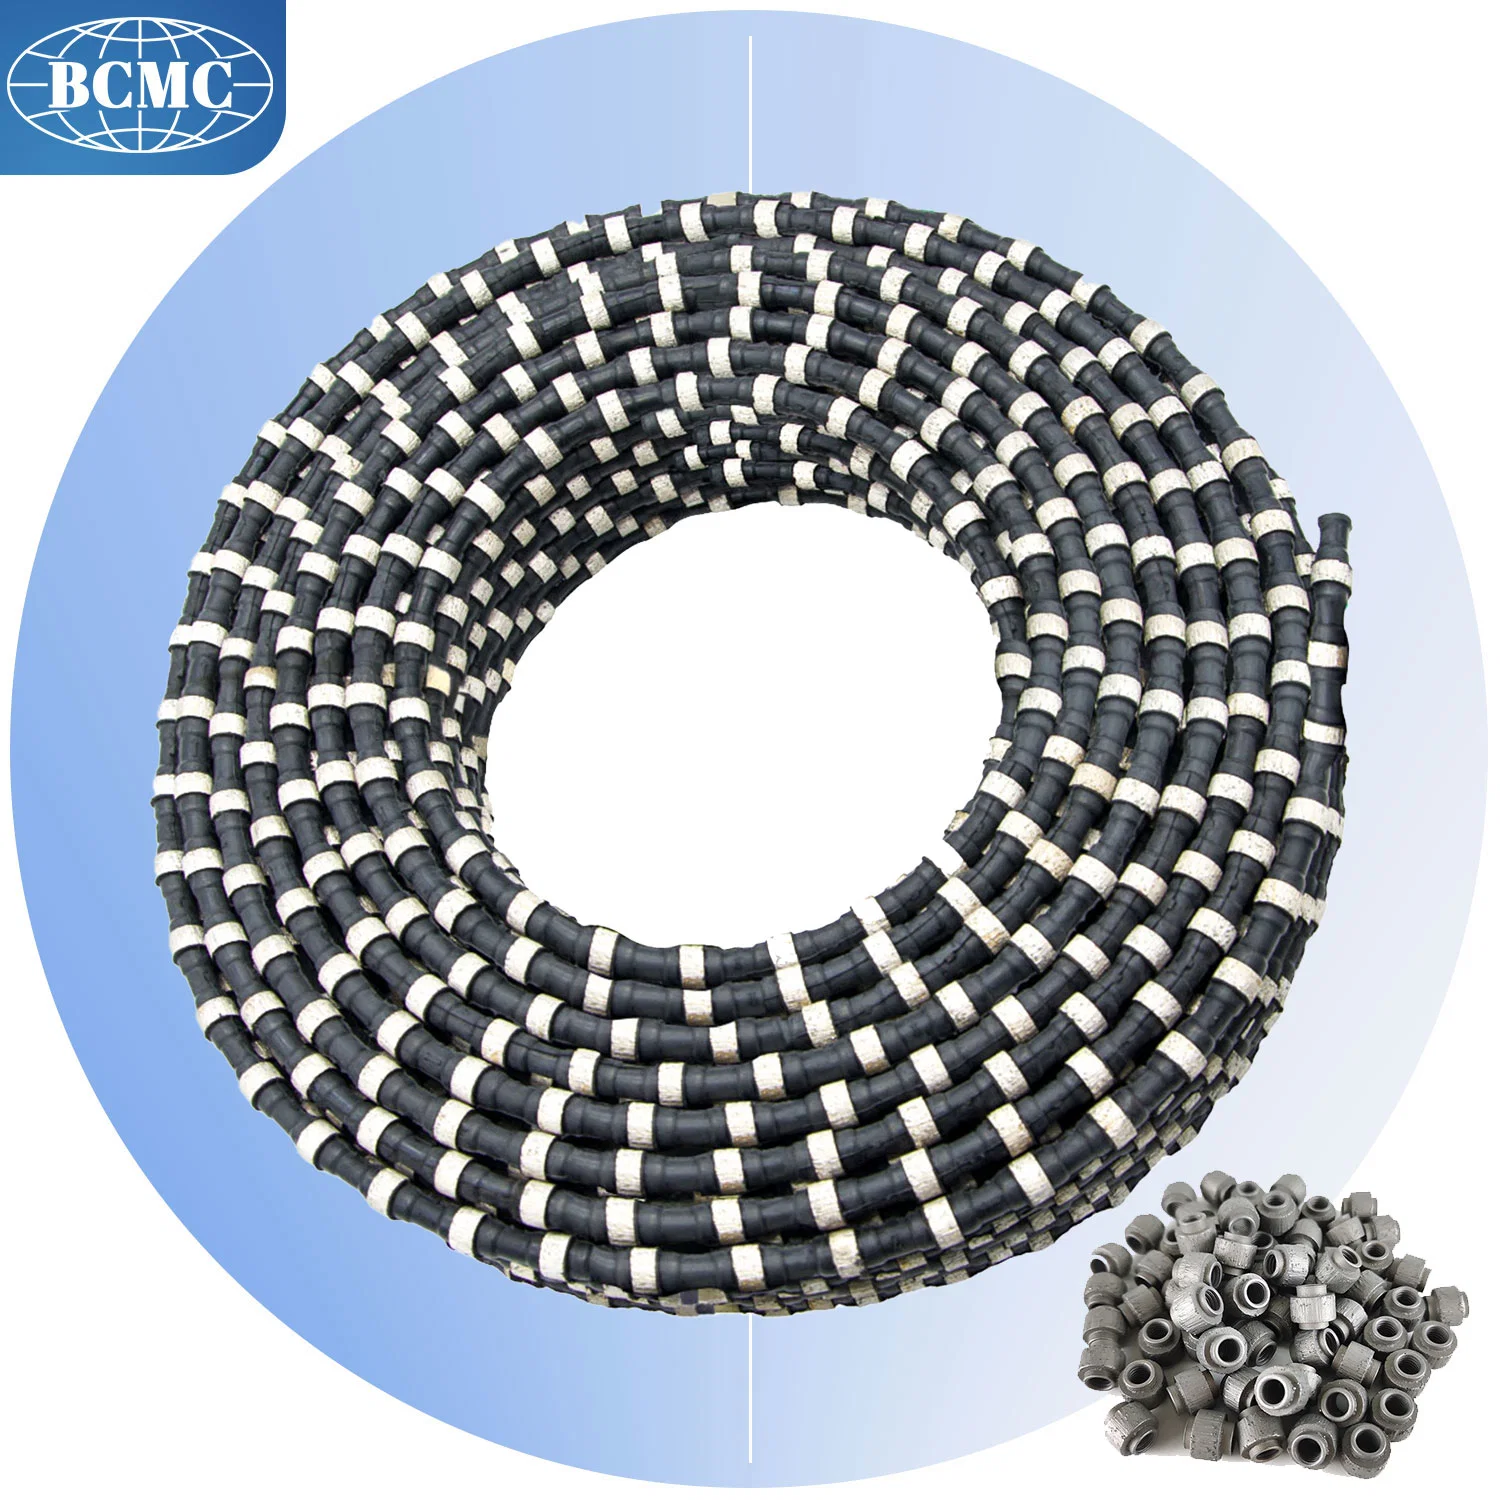 China Fast Stone Cutting Bcmc Concrete Cable Diamond Multi Saw Machine Wire